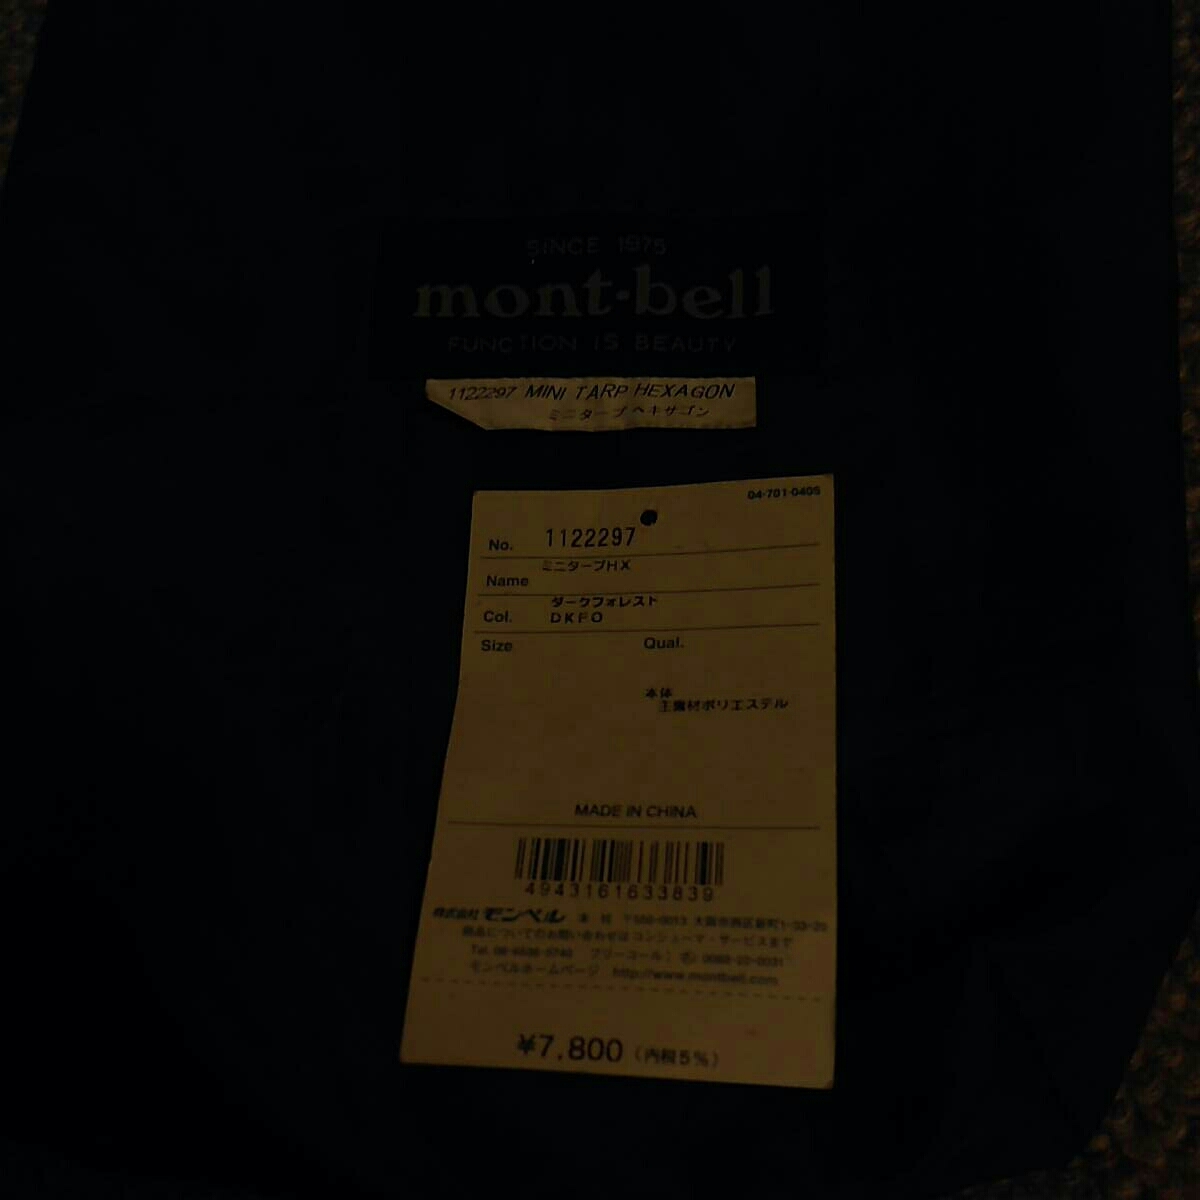 使用困難mont-bell Montbell Minitapu HX黑暗森林DKFO 原文:中古 難あり mont-bell モンベル ミニタープHX ダークフォレスト DKFO 